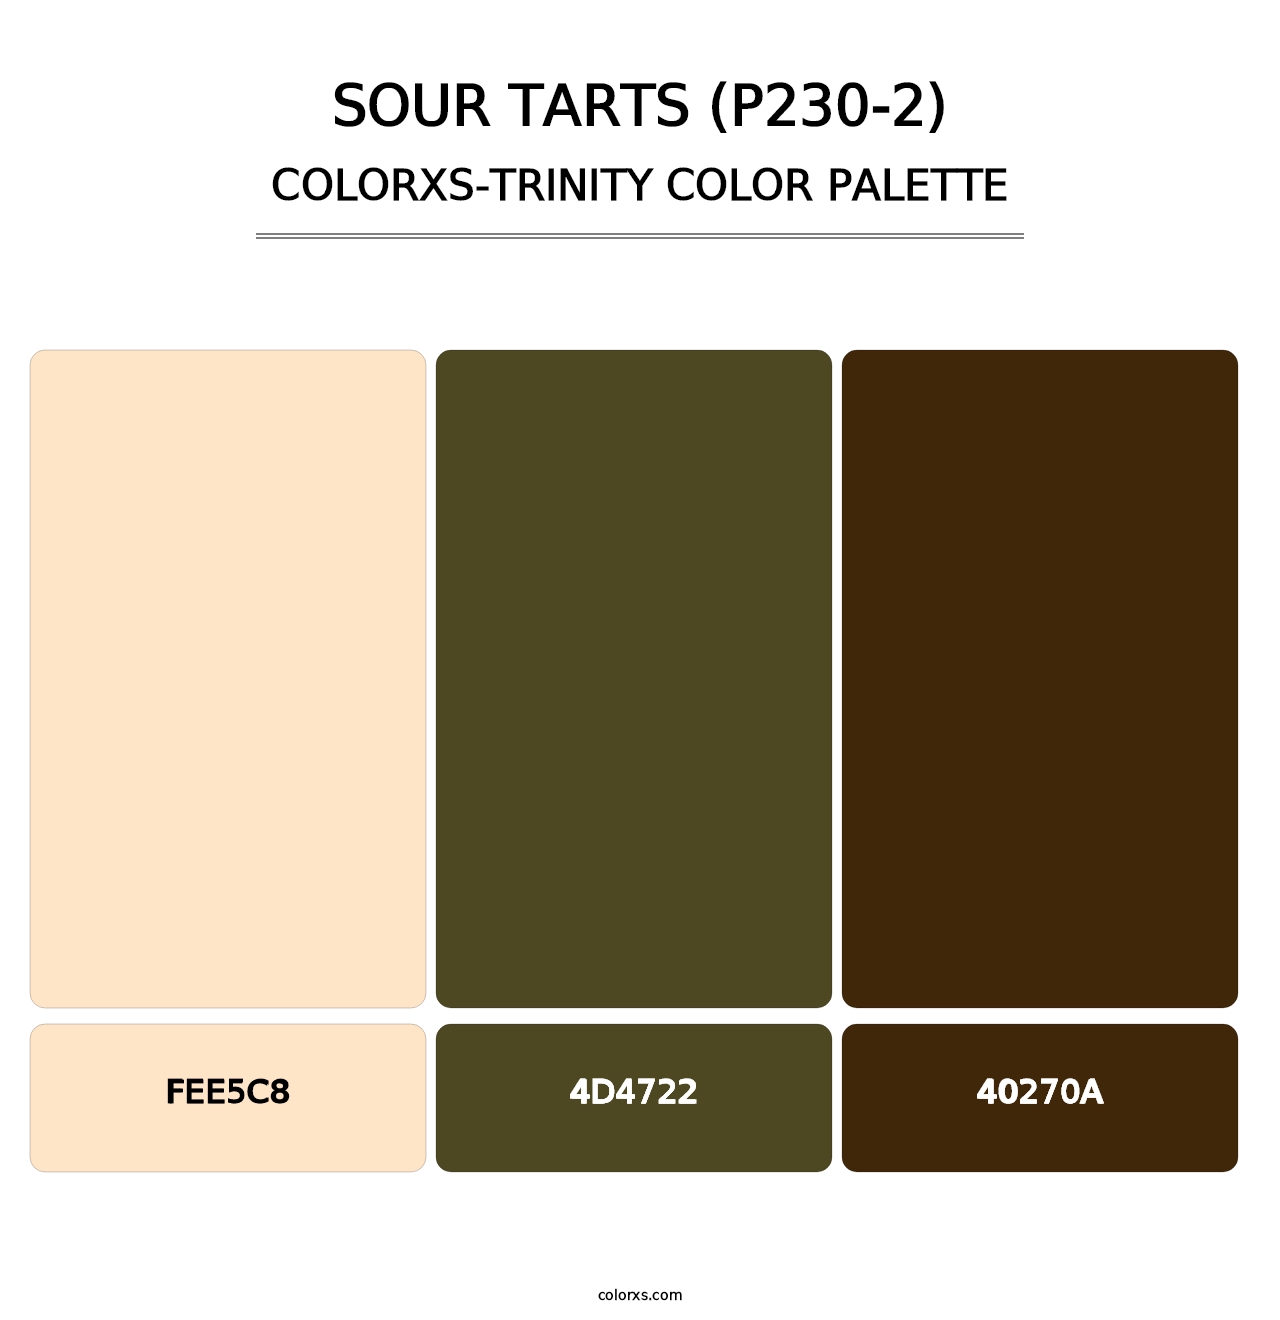 Sour Tarts (P230-2) - Colorxs Trinity Palette